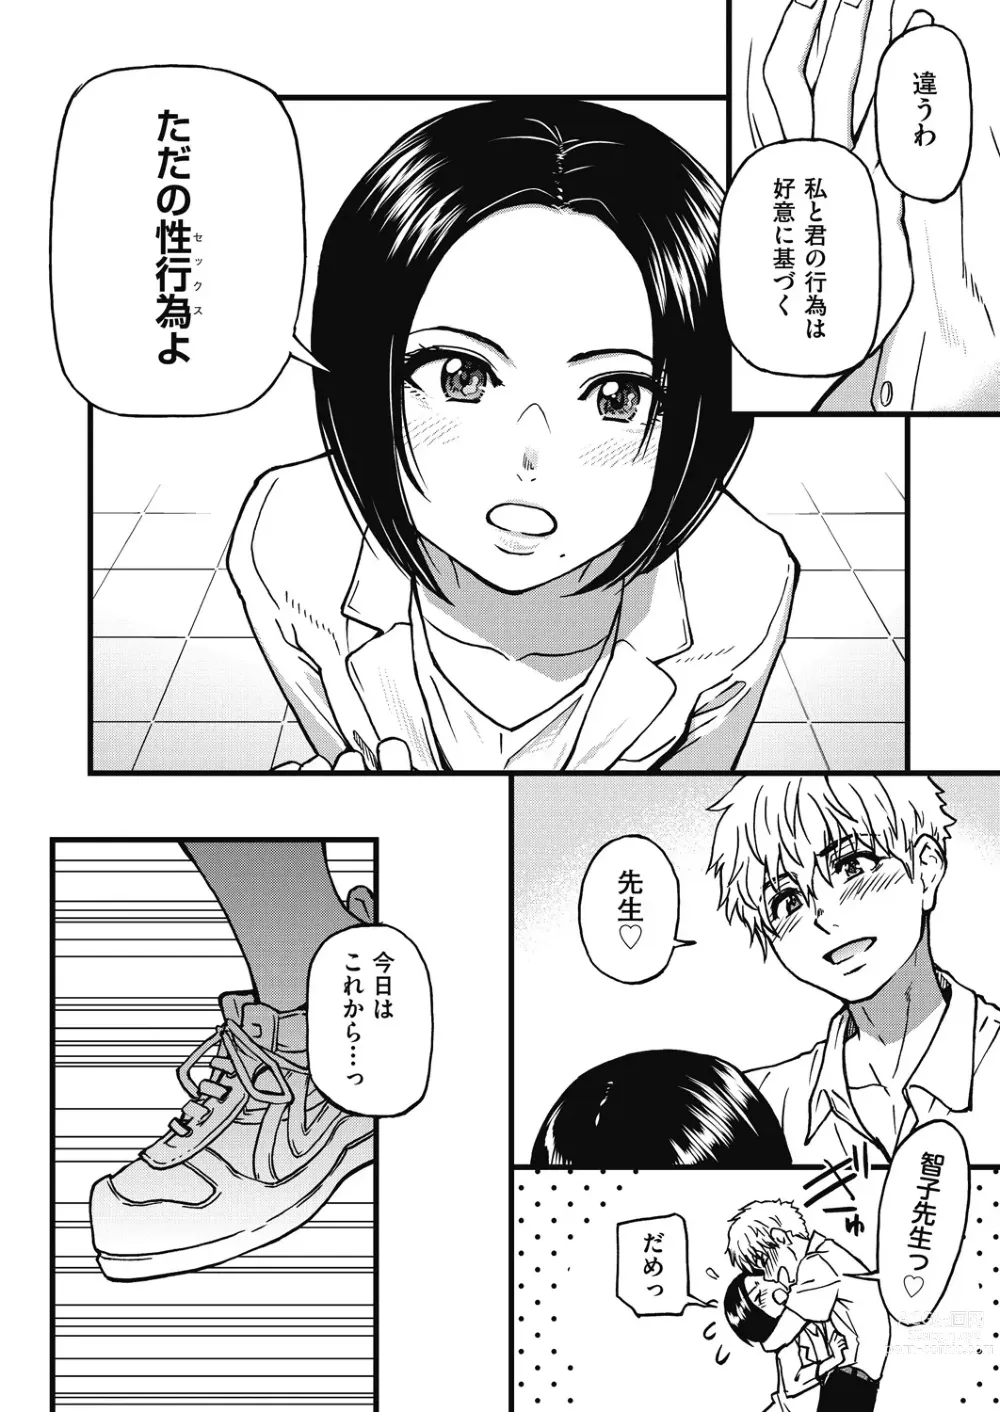 Page 277 of manga Boku no Seieki de Honpuku Kaiyu!!